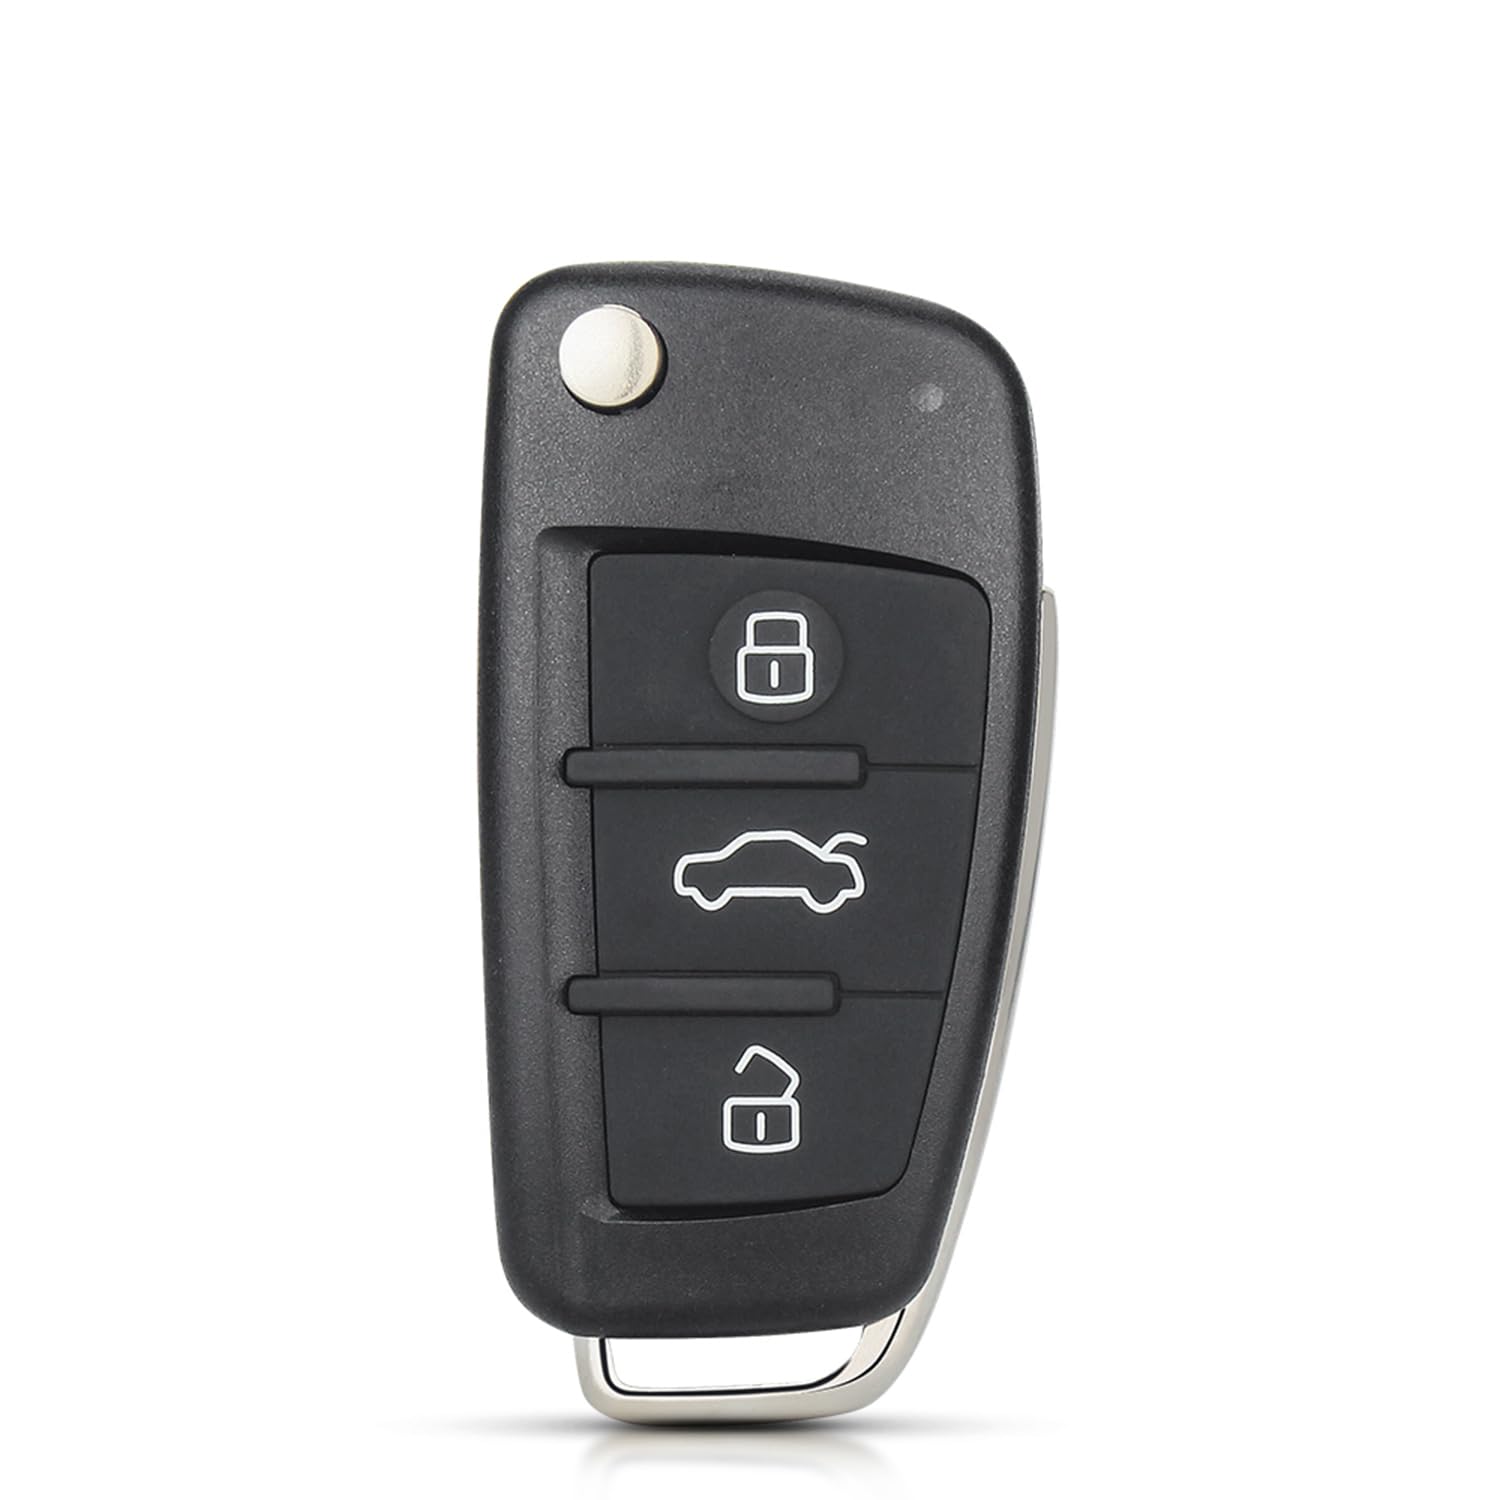 HooRLZ Audi-Schlüsselanhänger-Abdeckung, Ersatz für Audi A2, A3, A4, A6, A8, TT, Q7, S3, Fernbedienung, Autoschlüssel-Hülle, 3-Tasten-Audi A3-Schlüsselanhänger, Audi TT Schlüsselanhänger – mit Klinge von HooRLZ